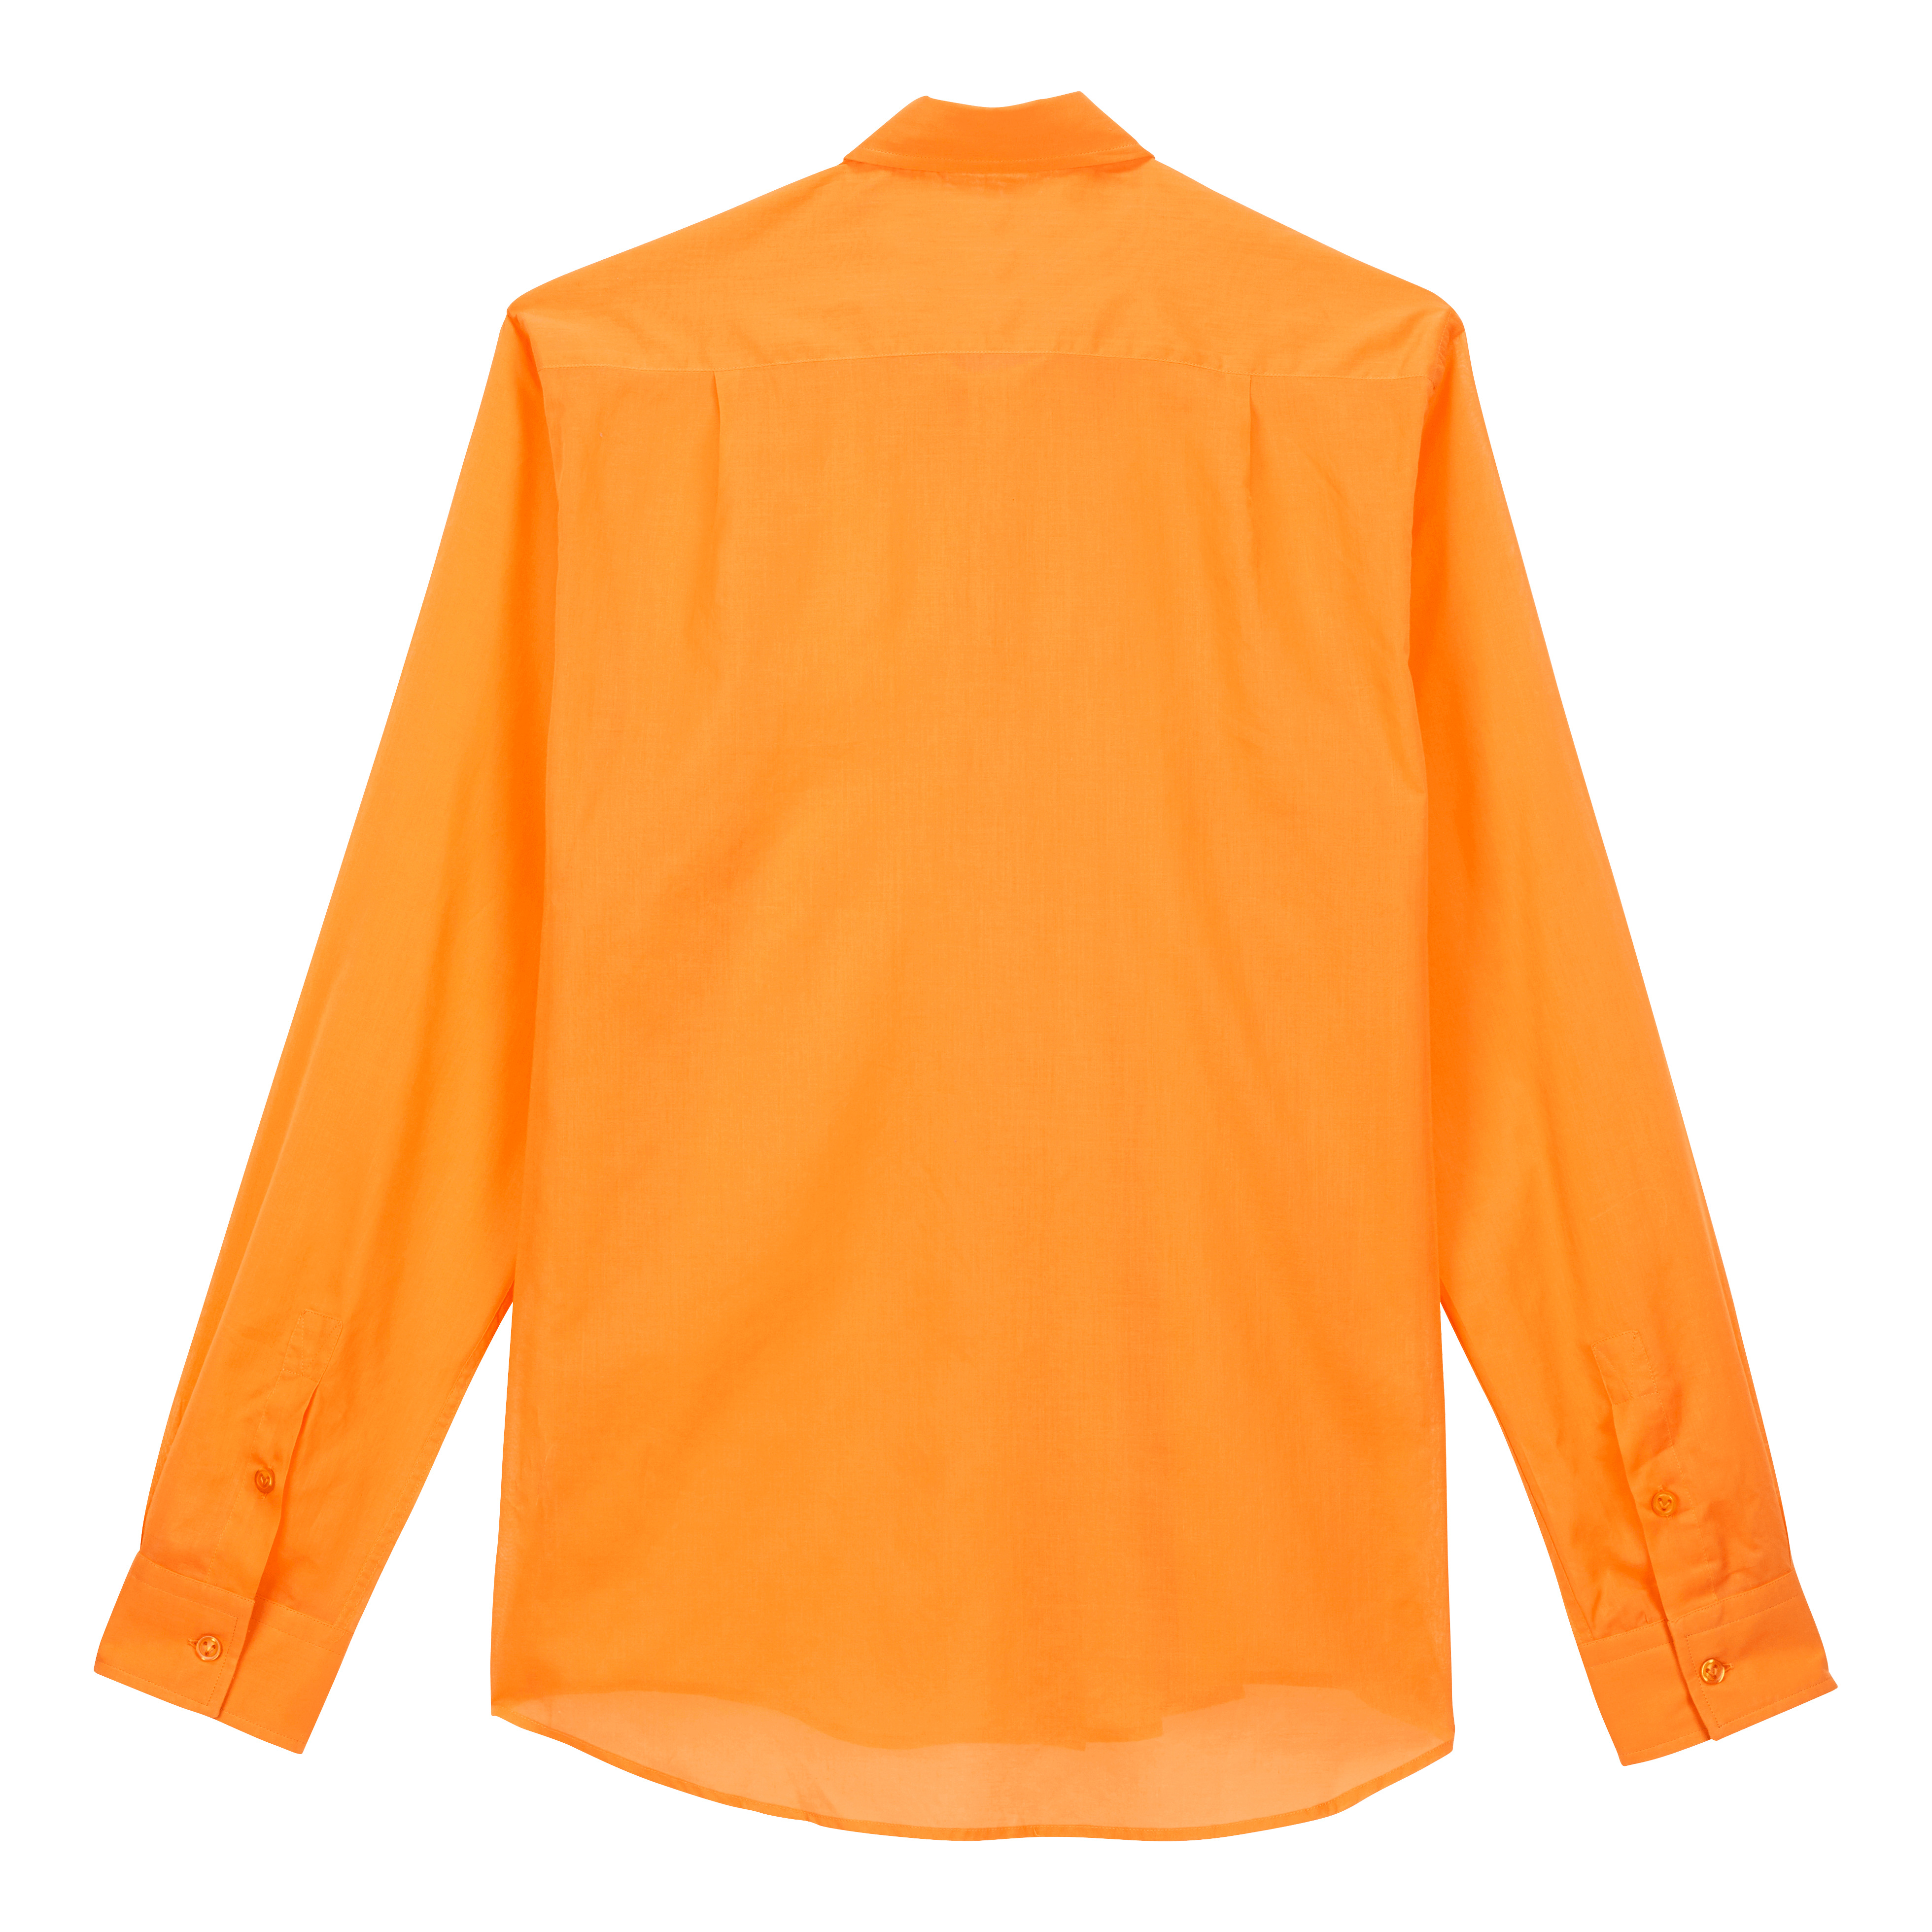 Unisex Cotton Voile Lightweight Shirt Solid - 2